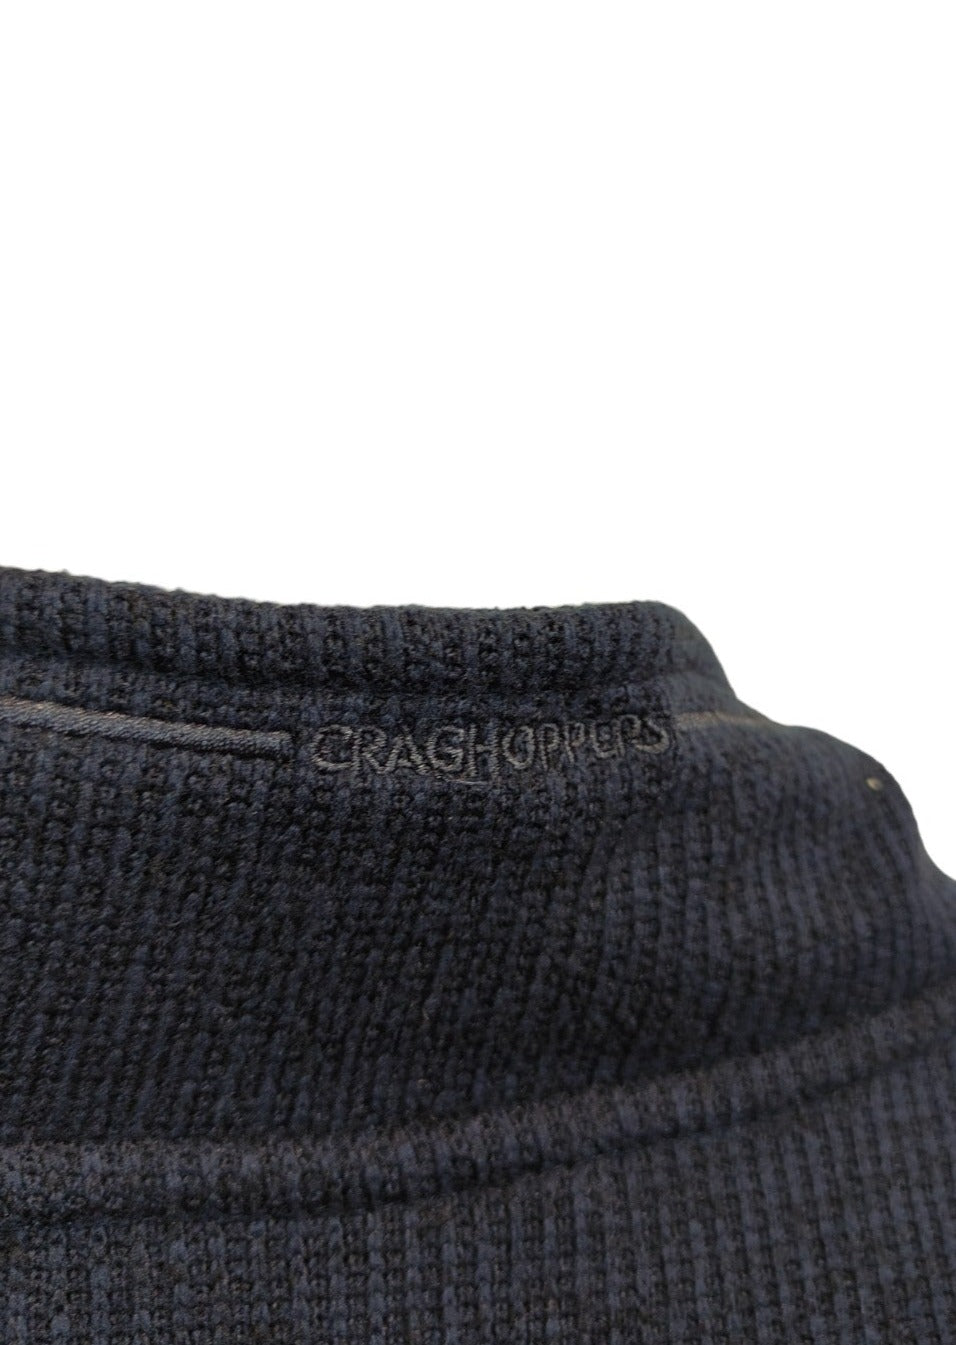 Stock, Πλεκτή Ανδρική Μπλούζα GRAGHOPPERS σε Σκούρο Μπλε χρώμα (XL)